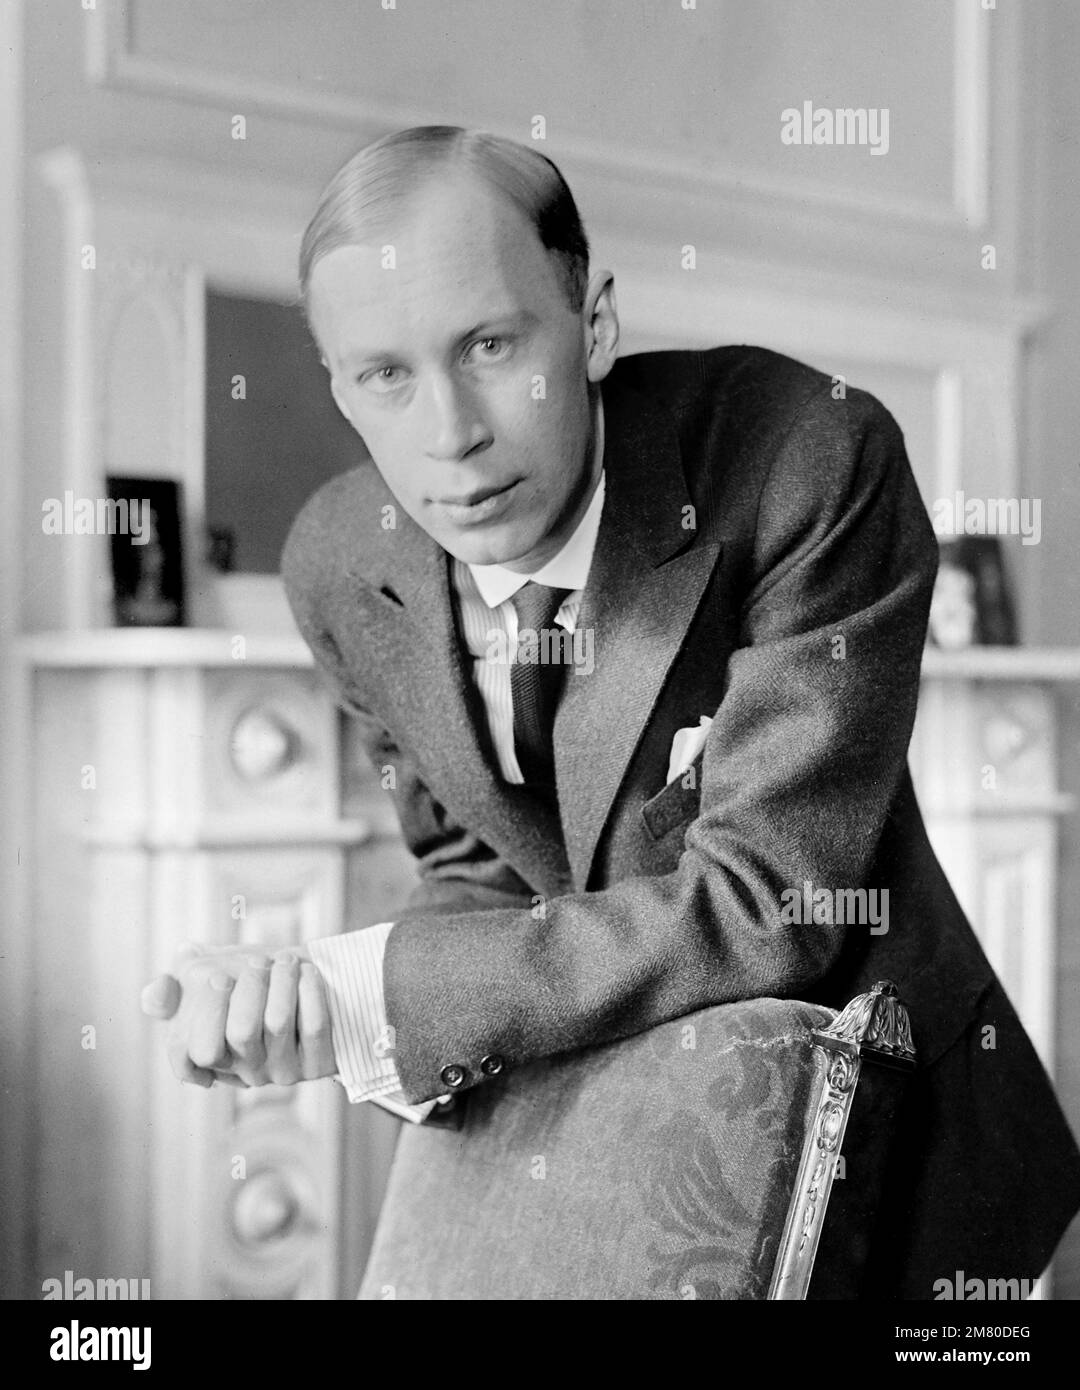 Sergei Prokofiev. Ritratto del compositore, pianista e direttore d'orchestra russo Sergei Sergeyevich Prokofiev (1891-1953), foto di Bains News Service, c. 1918-1920 Foto Stock